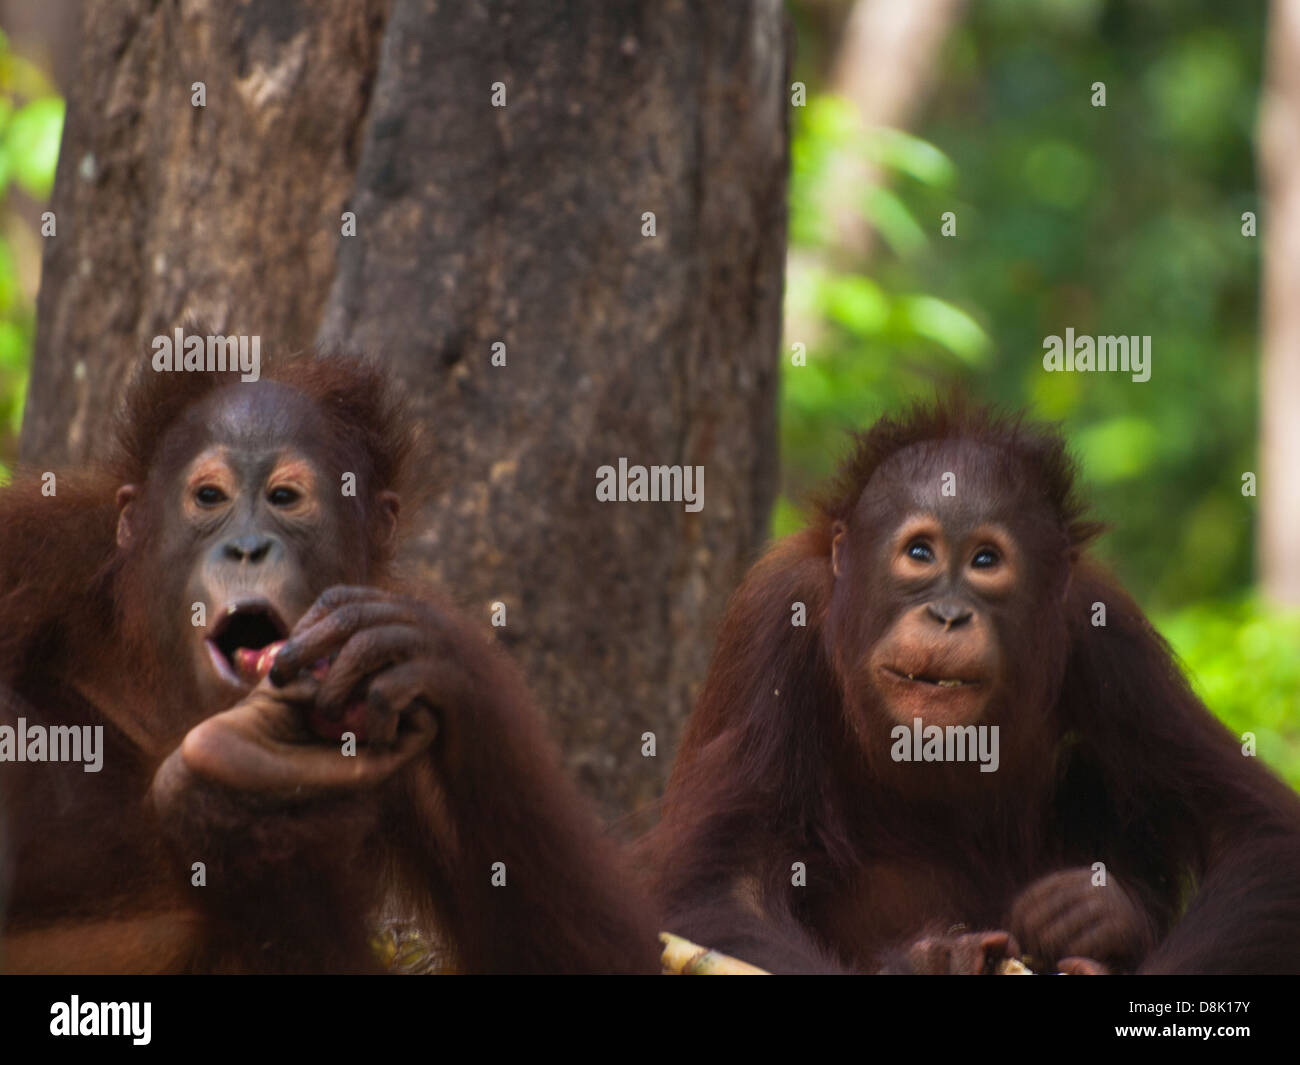 Two orangutan cubs Stock Photo